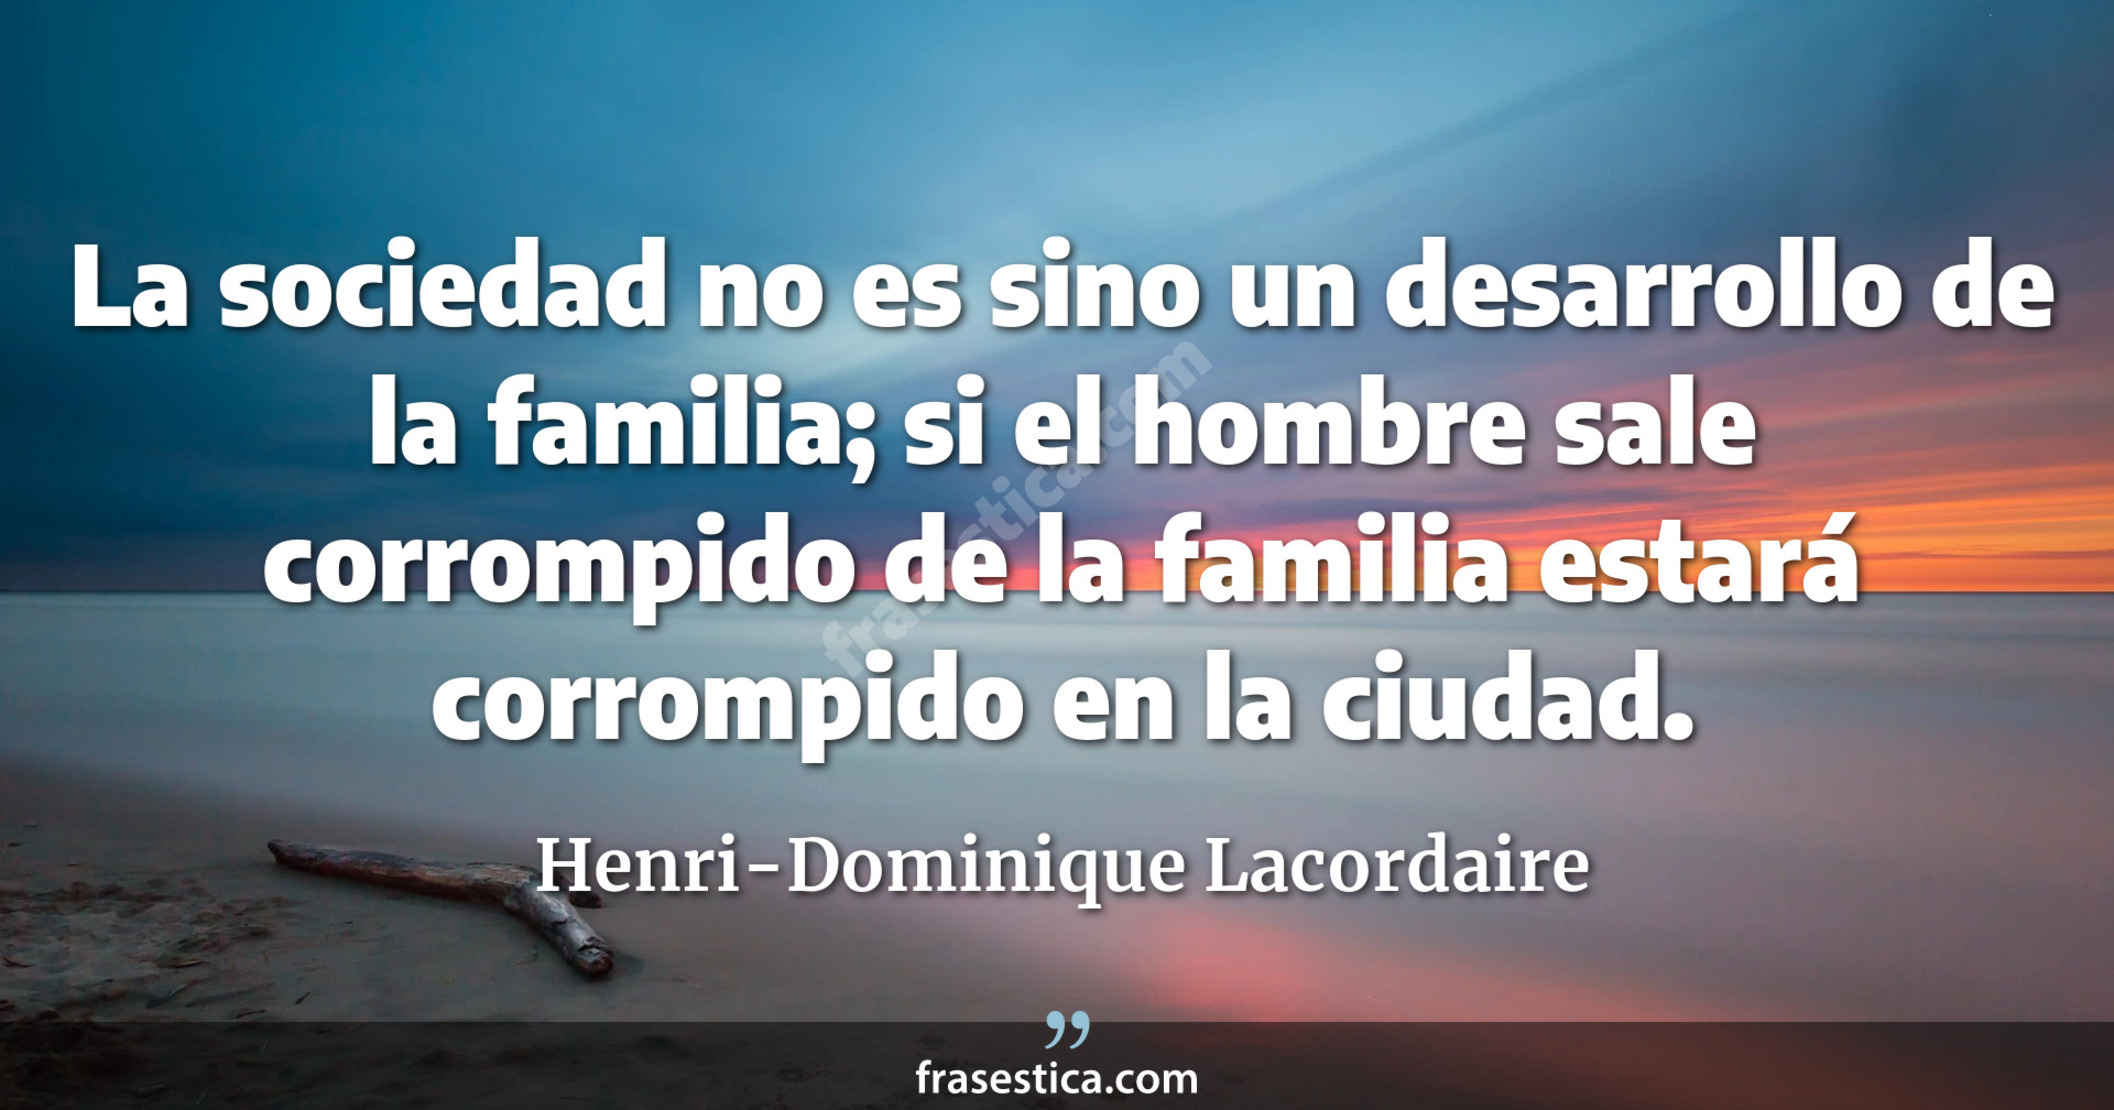 La sociedad no es sino un desarrollo de la familia; si el hombre sale corrompido de la familia estará corrompido en la ciudad. - Henri-Dominique Lacordaire